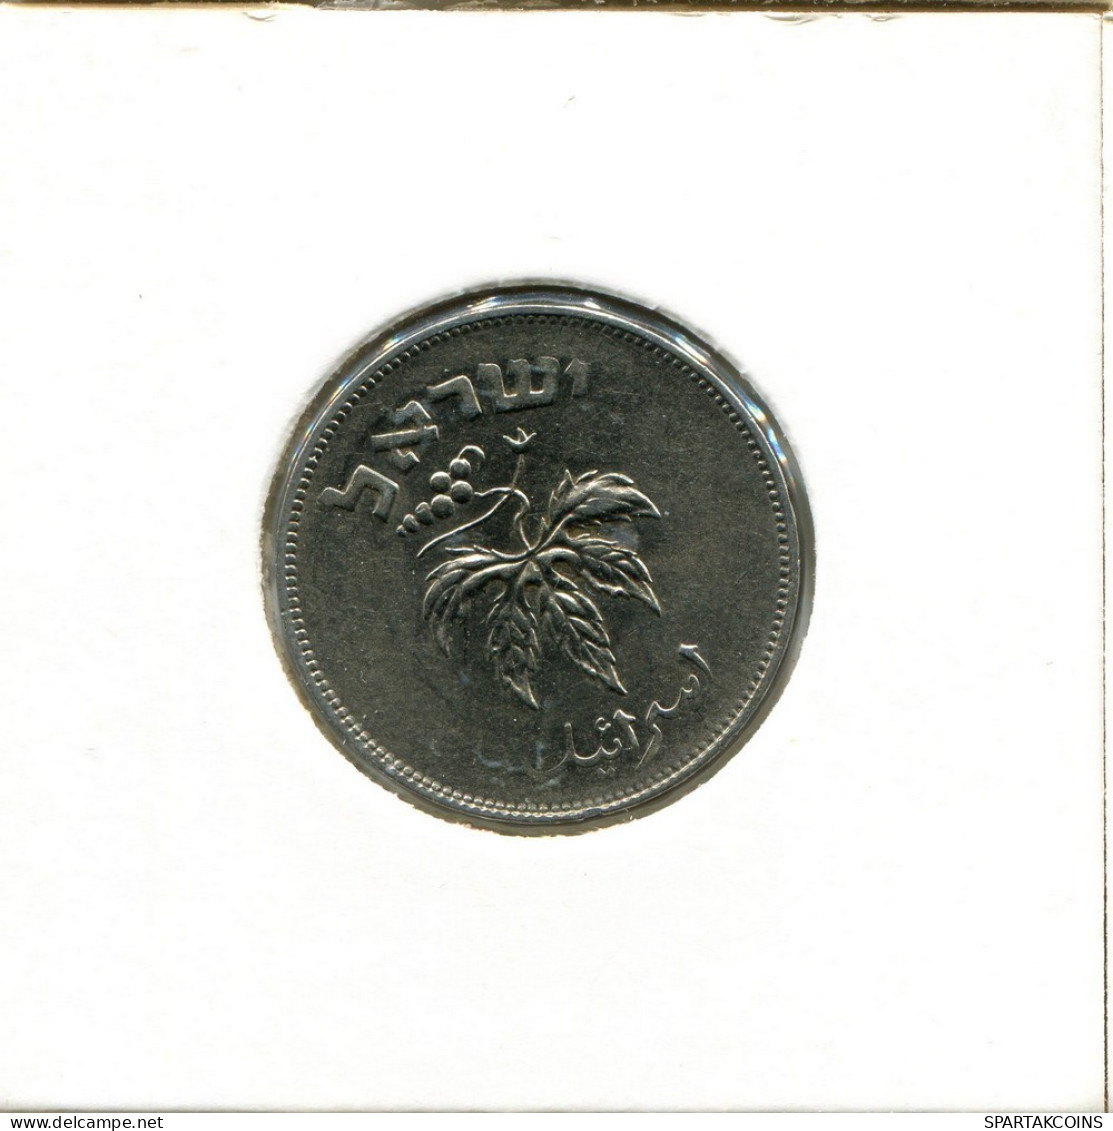 50 PRUTA 1954 ISRAEL Coin #AY929.U.A